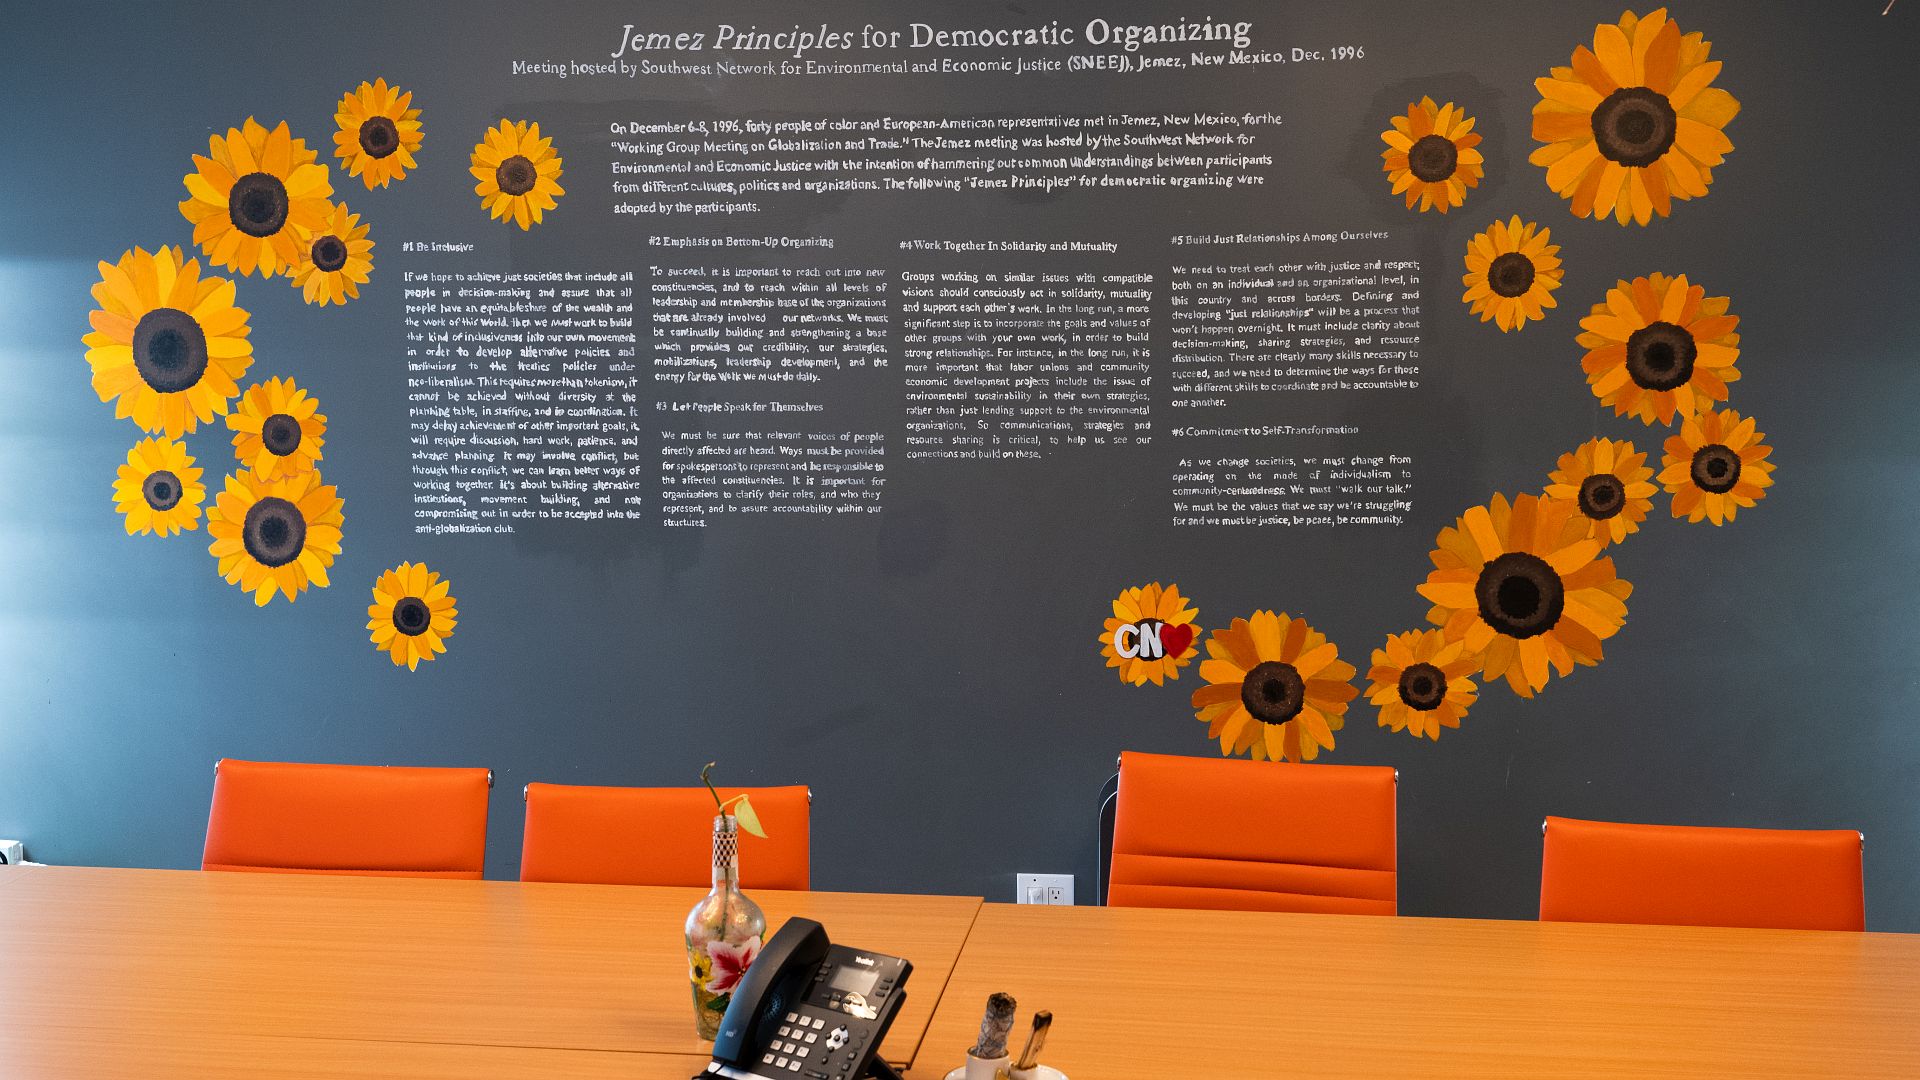 Die Jemez-Prinzipien für demokratisches Organisieren an der Wand eines der Sitzungsräume von UPROSE